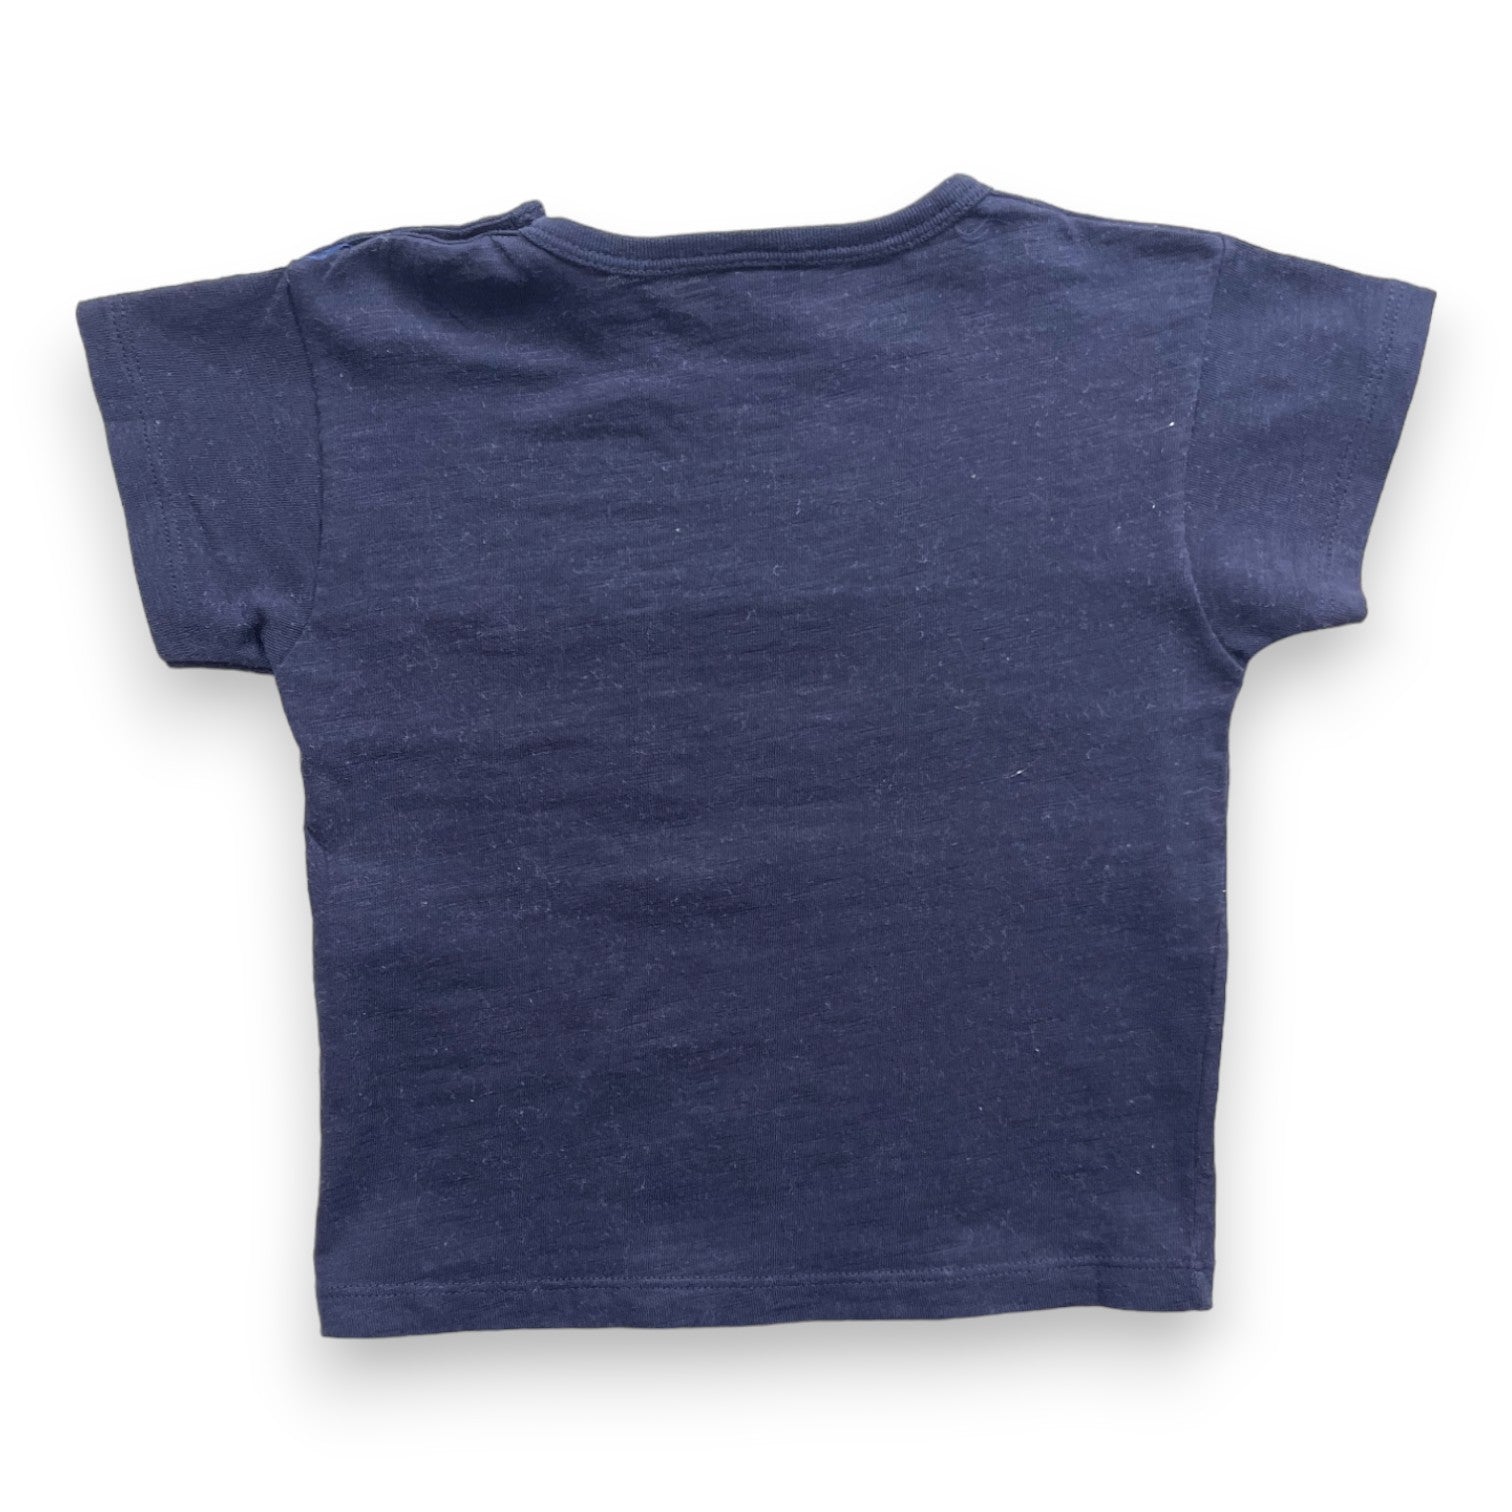 PETIT BATEAU - T shirt bleu nuit - 2 ans